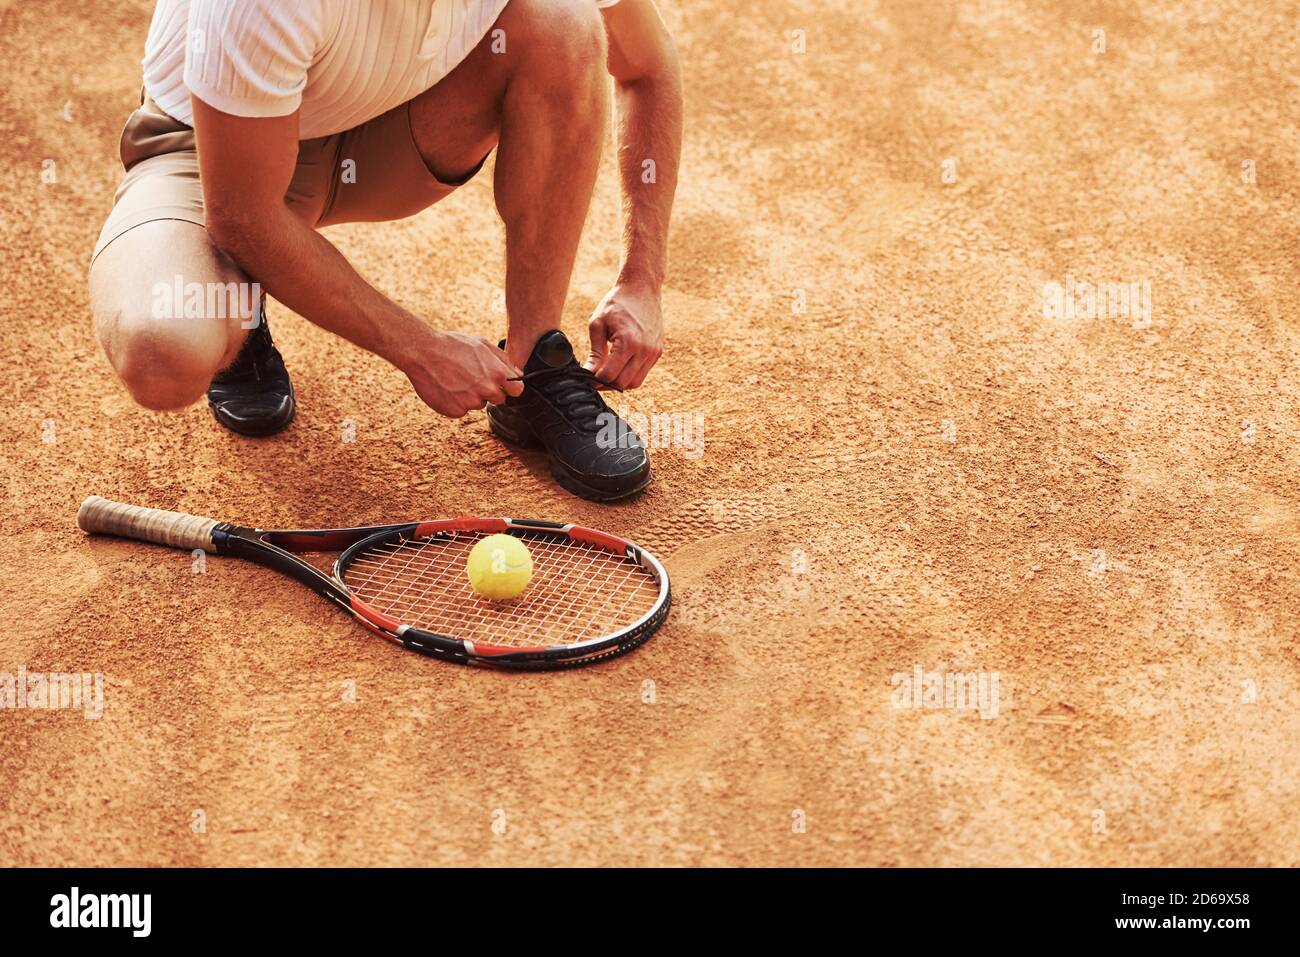 Préparation. Un jeune joueur de tennis en vêtements de sport se trouve sur le court à l'extérieur Banque D'Images